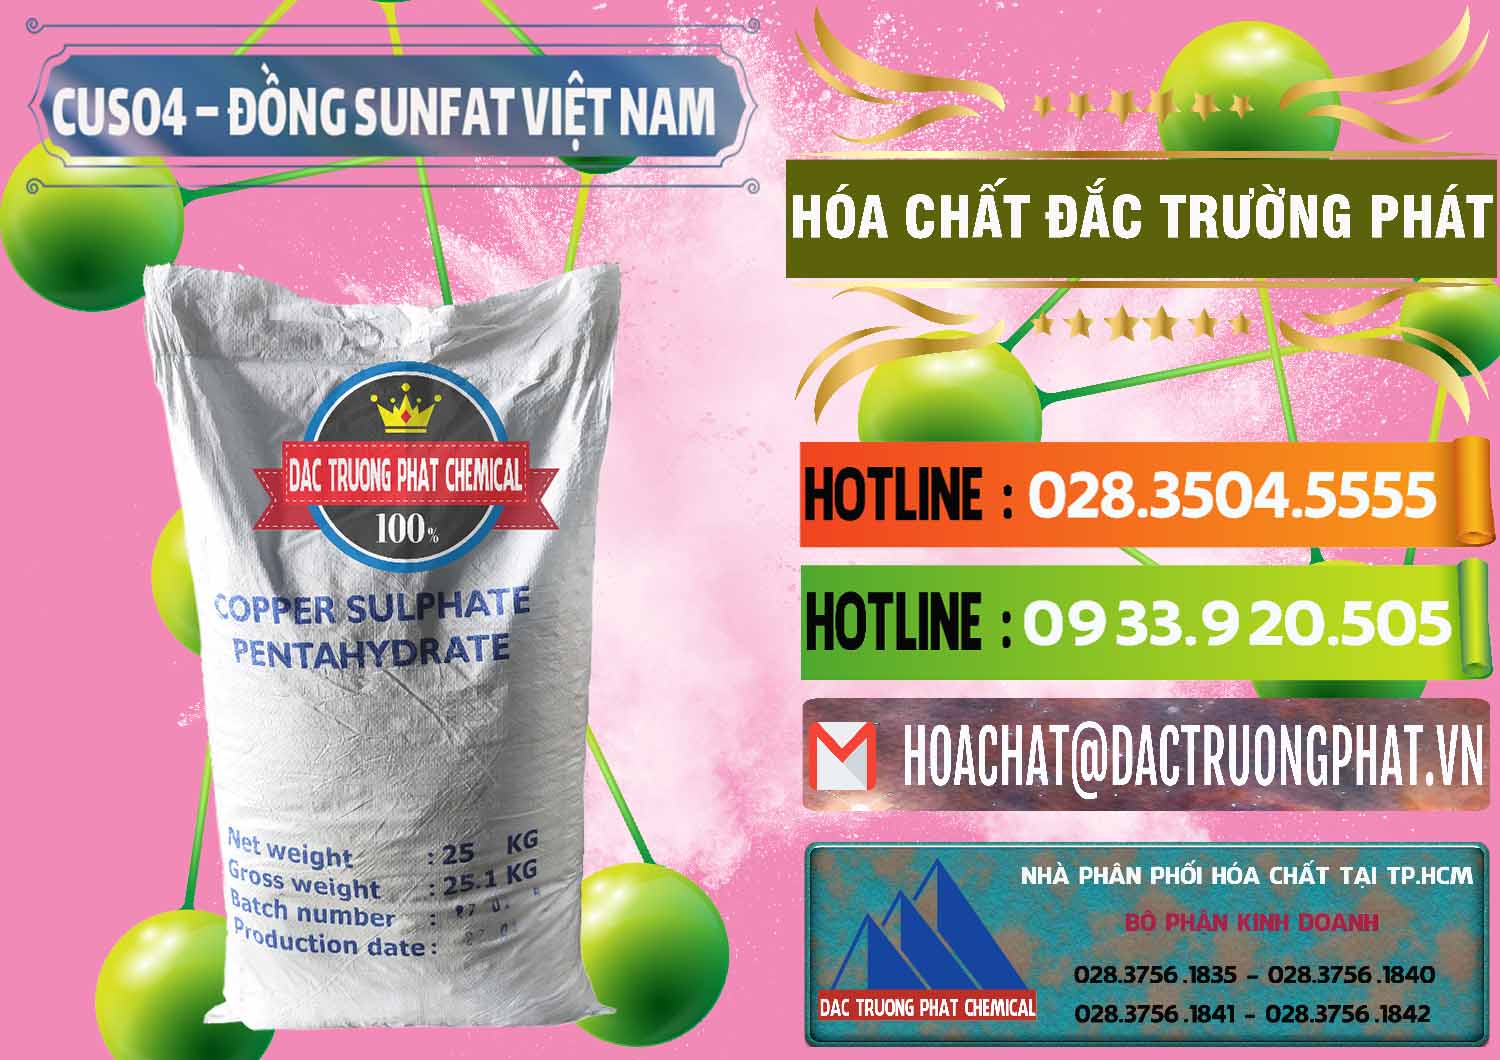 Đơn vị kinh doanh và bán CuSO4 – Đồng Sunfat Dạng Bột Việt Nam - 0196 - Chuyên phân phối & kinh doanh hóa chất tại TP.HCM - cungcaphoachat.com.vn